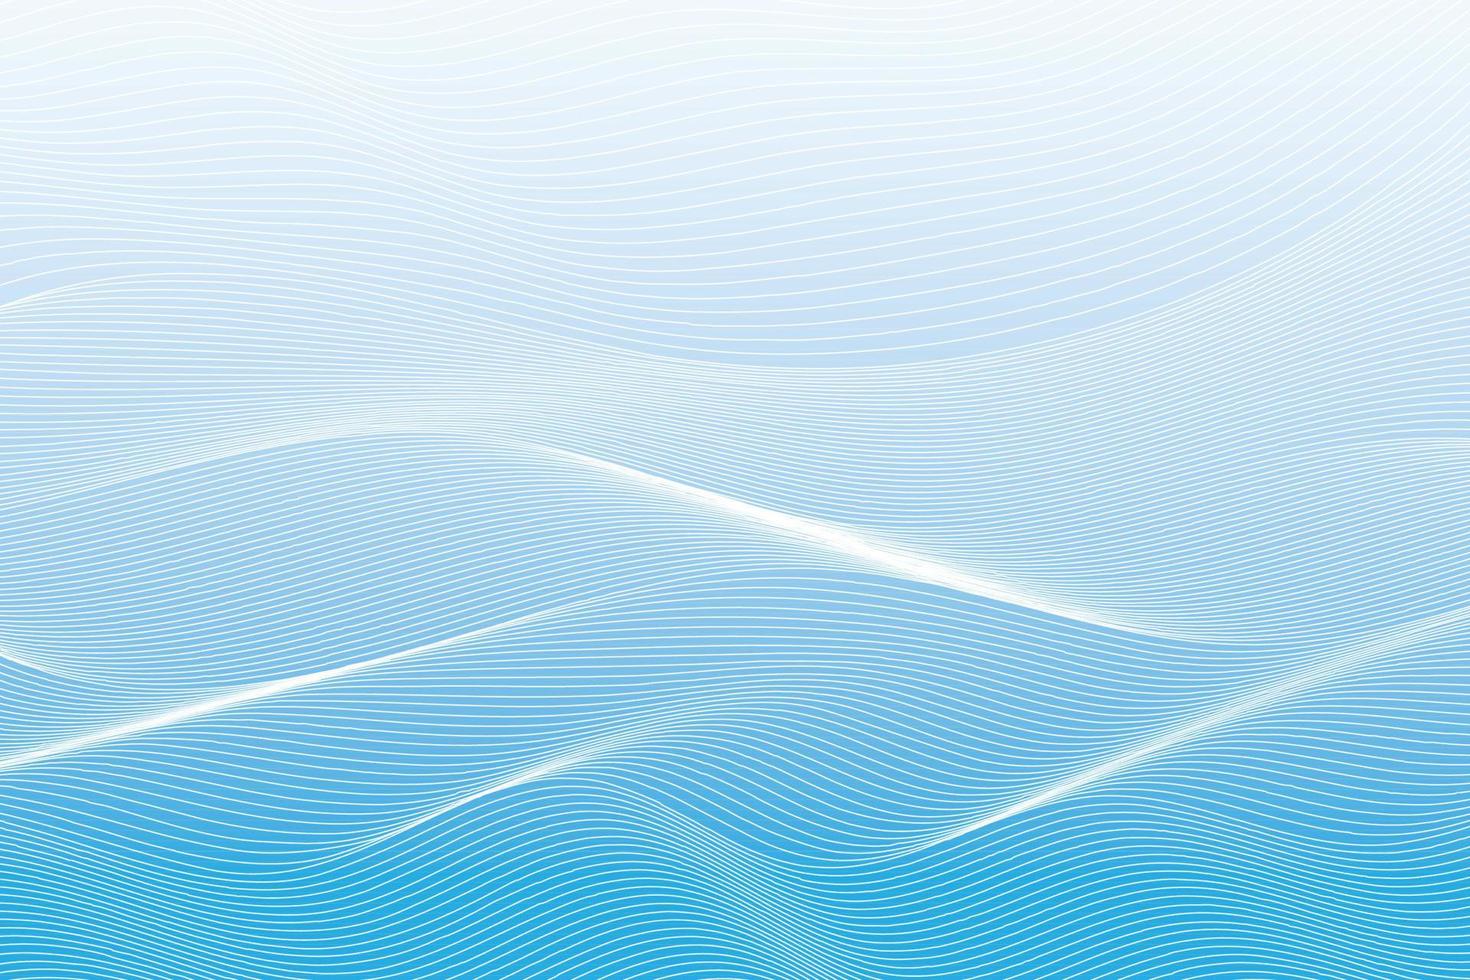 astratto bianca e blu colore, moderno design strisce sfondo con geometrico il giro forma, ondulato modello. vettore illustrazione.